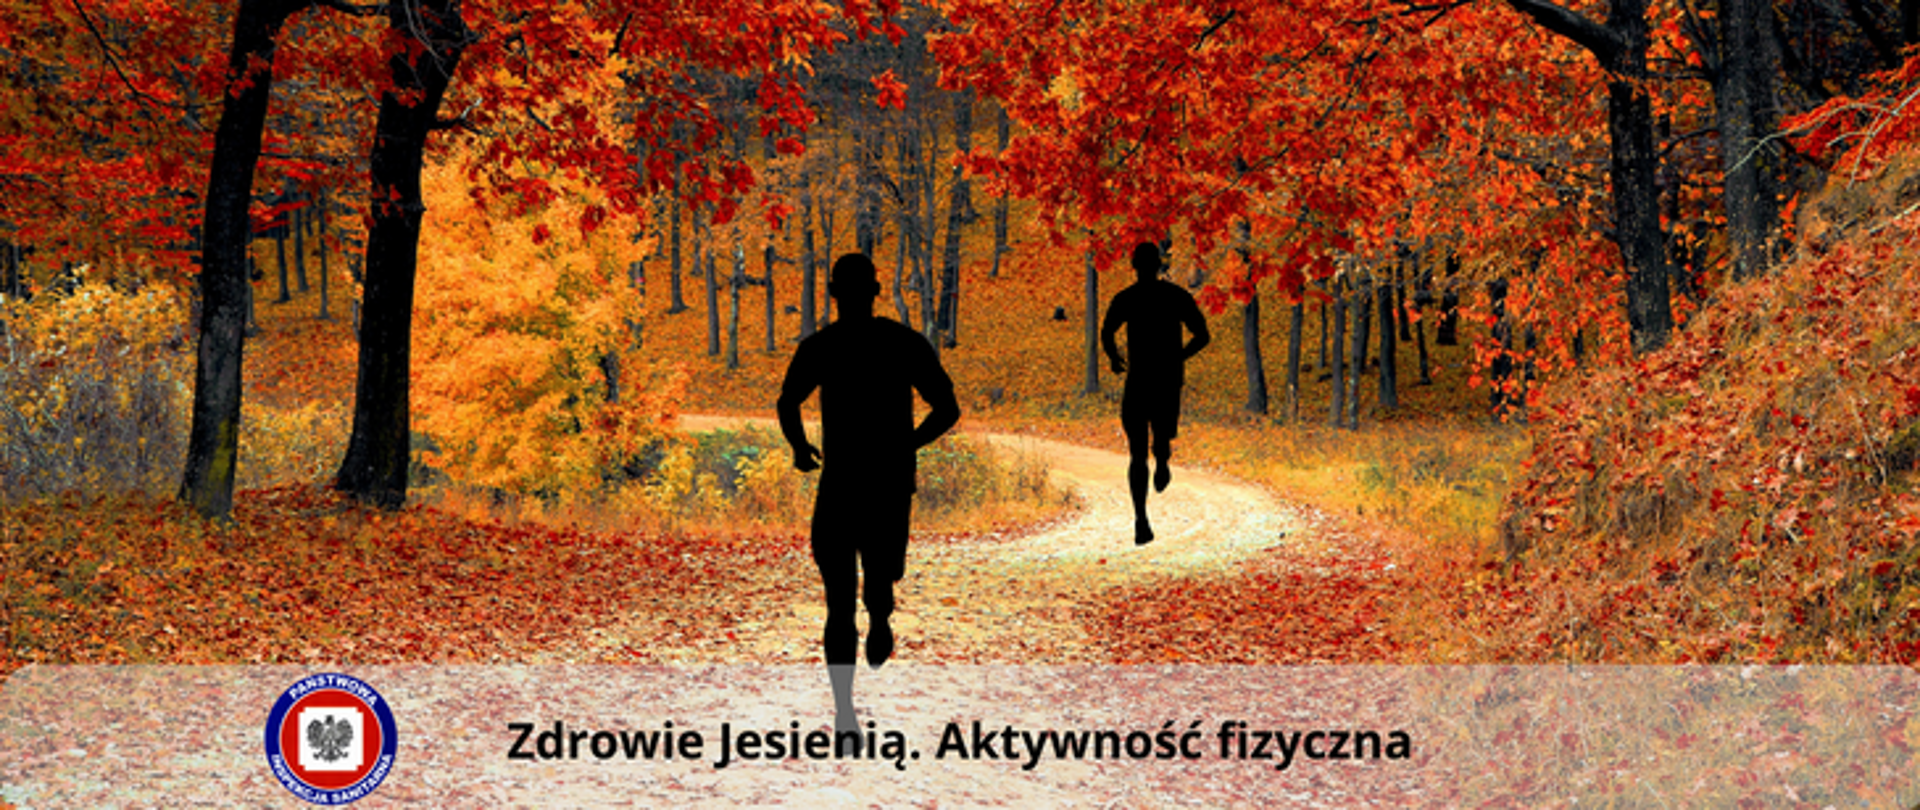 Dwie postacie biegnące ścieżką po lesie w sezonie jesiennym. Wokół drzewa i krzewy z liśćmi w kolorze żółtym i pomarańczowym. 